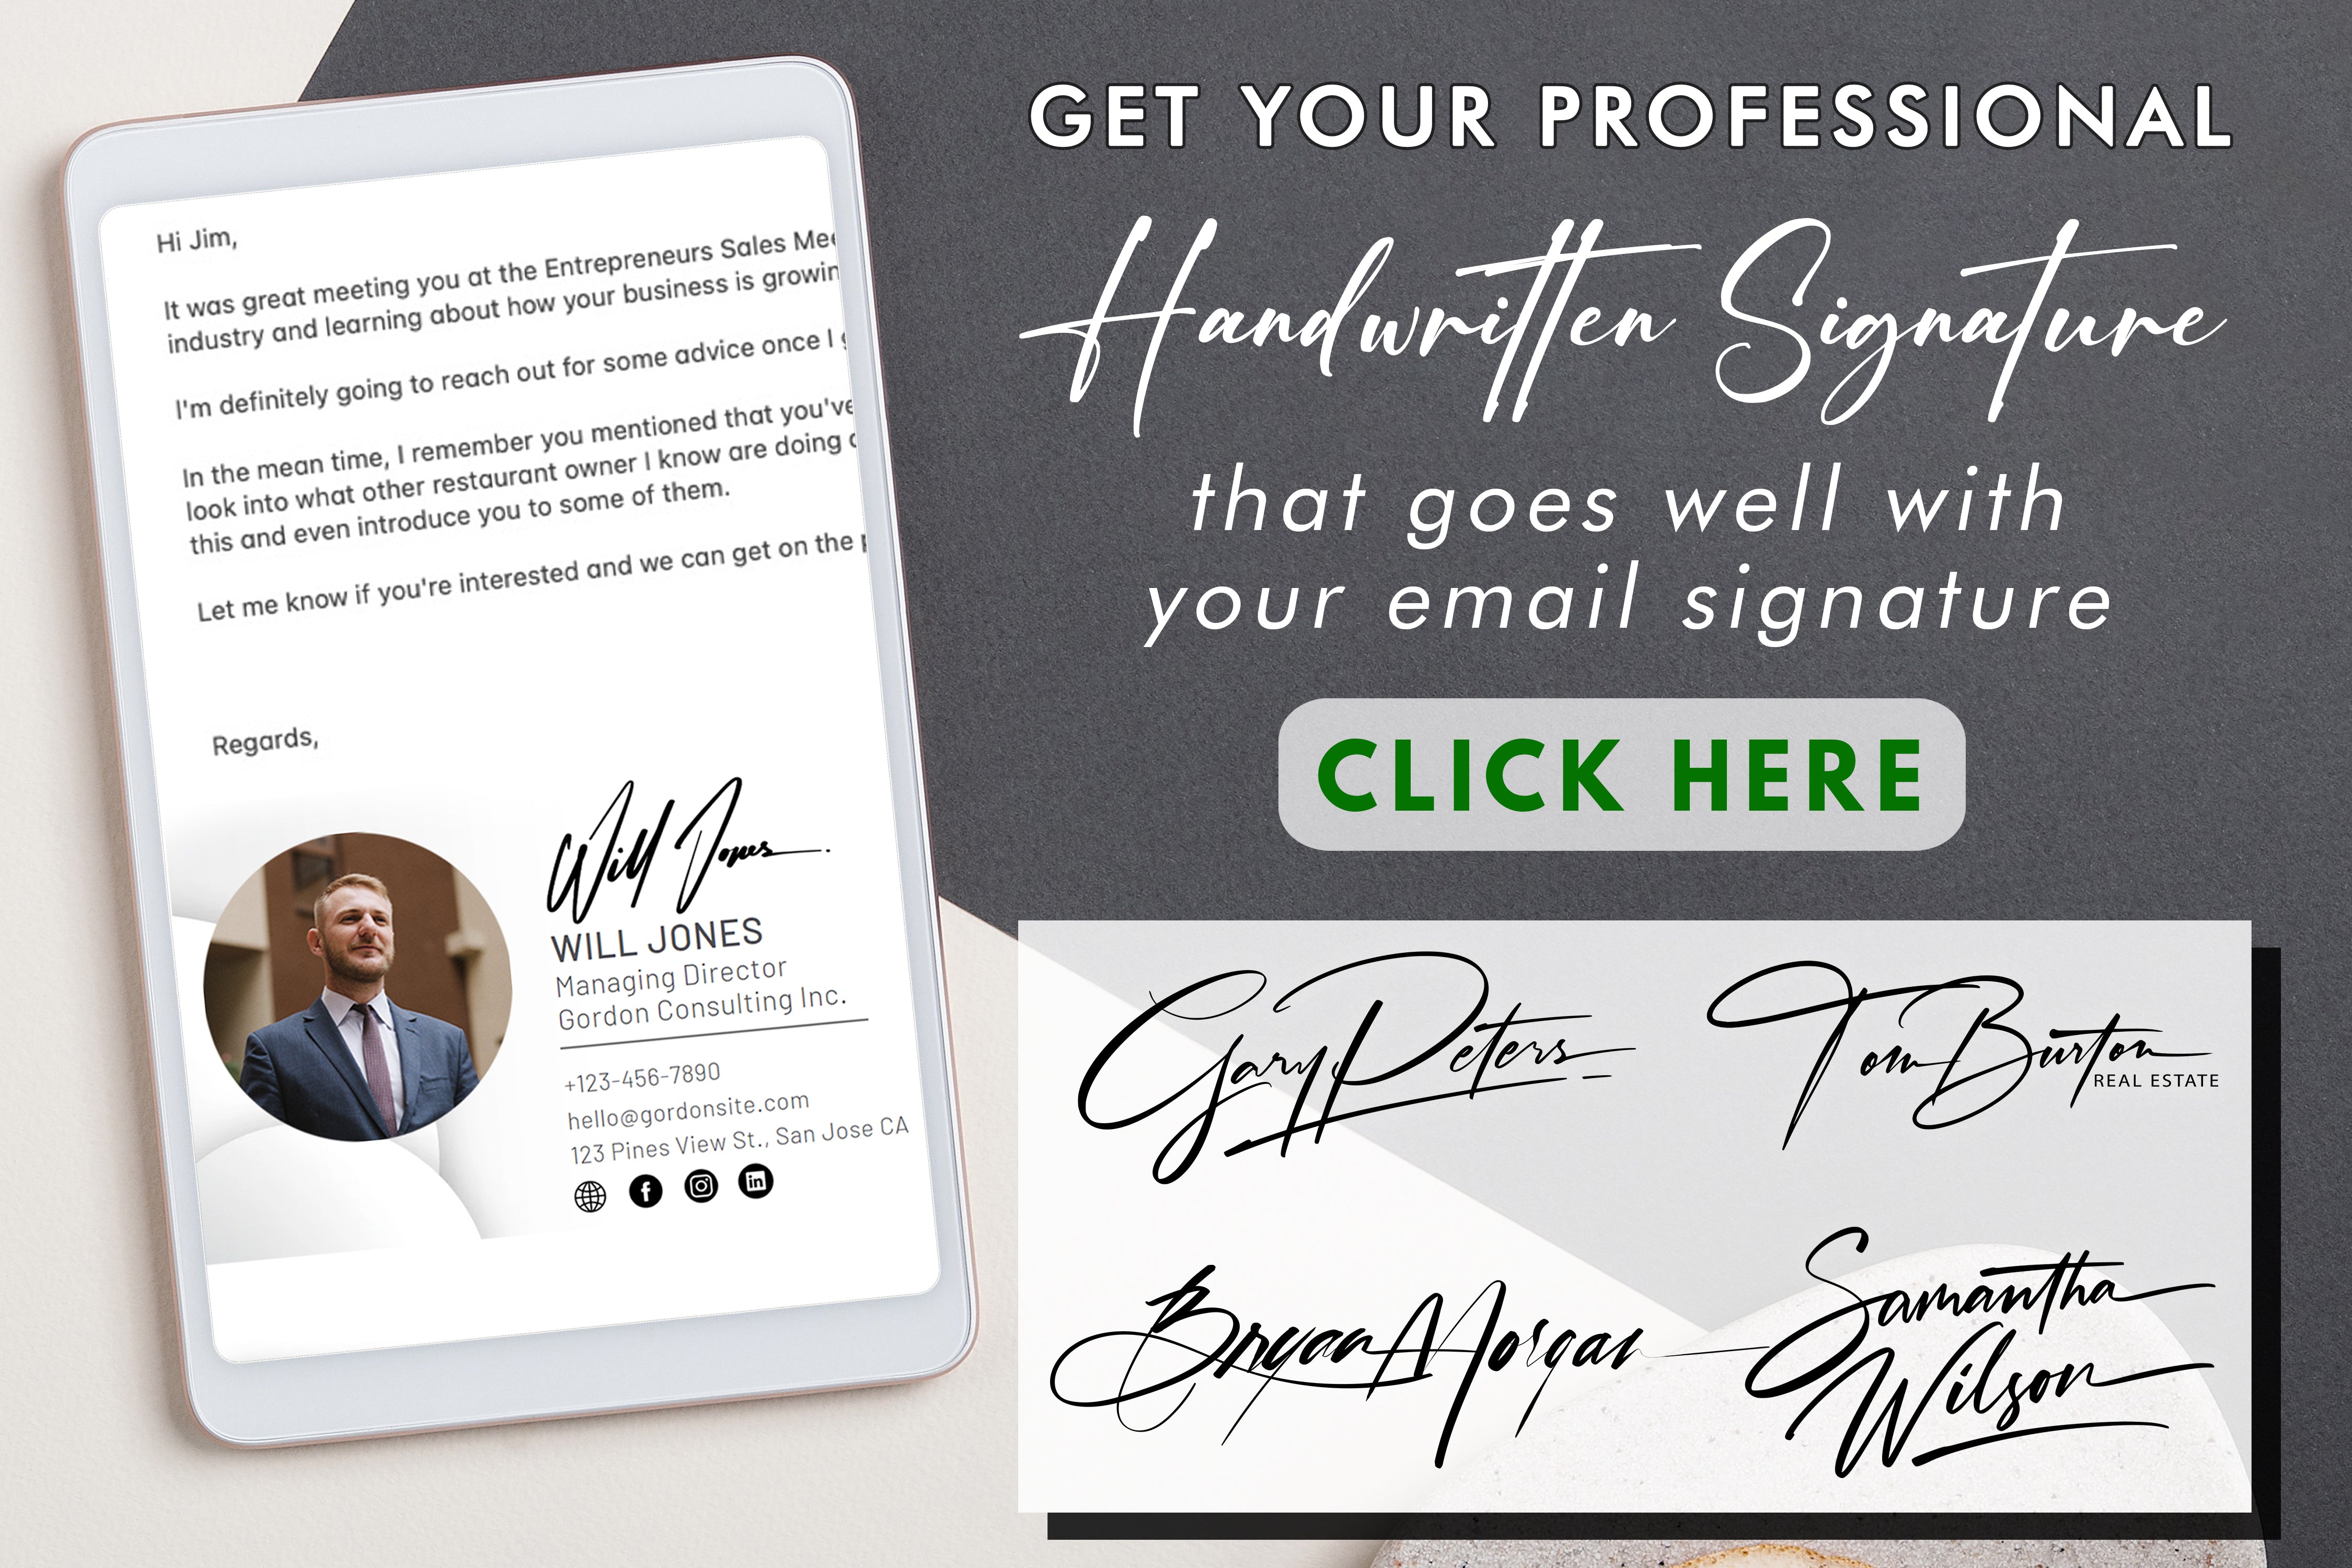 Dowiedz się, jak najlepiej wykorzystać blok podpisów i podnieść jakość podpisywania dokumentów dzięki wydajności i osobistemu charakterowi.